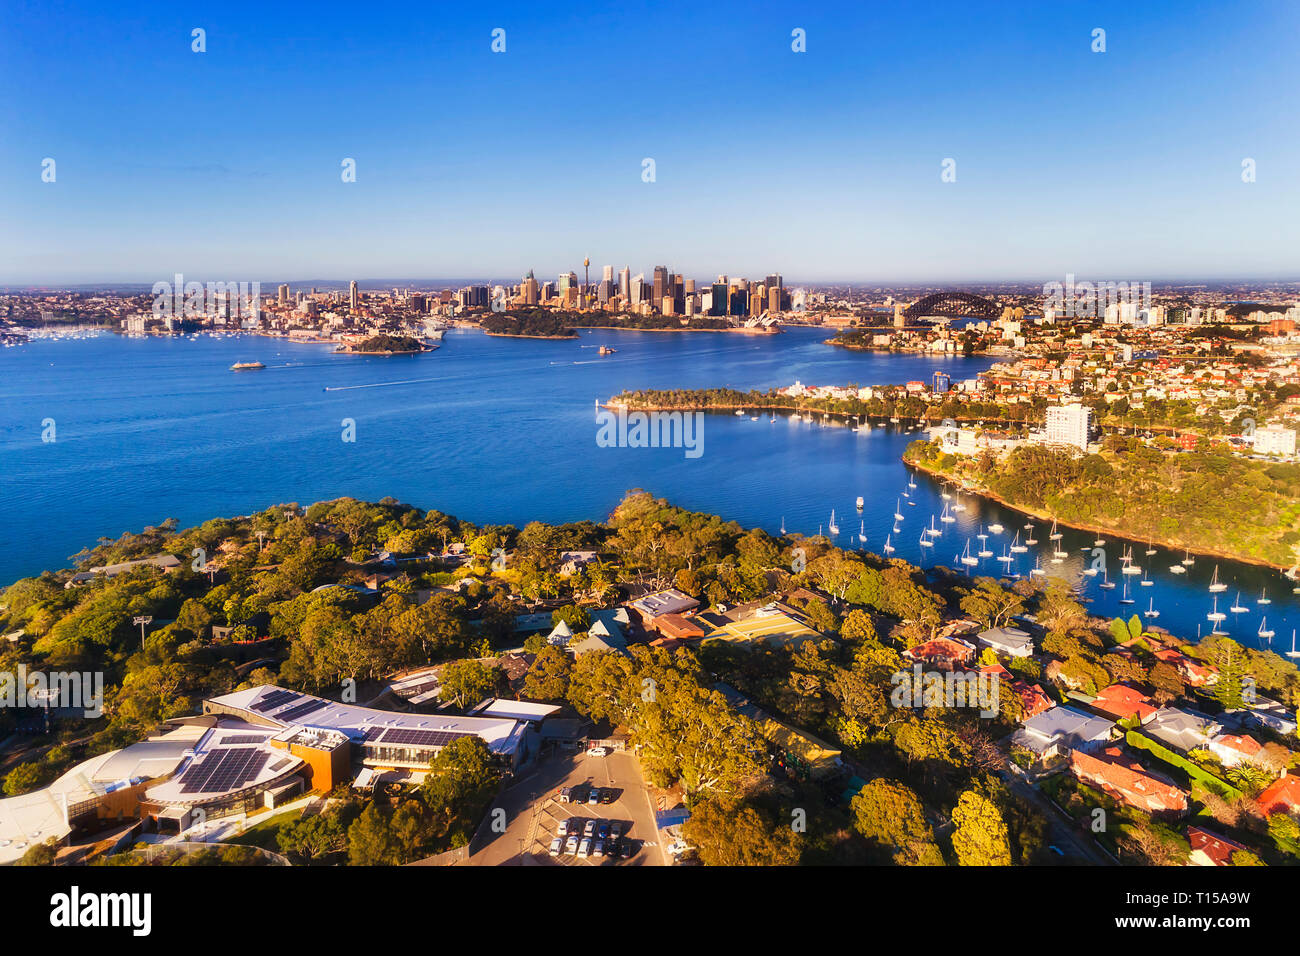 Lower North SHore Wohngebiet wohlhabenden Vorort Mosman auf SYdney HArbour Waterfront mit Blick auf weit entfernte Stadt Sydney CBD Sehenswürdigkeiten aus der Luft gesehen. Stockfoto